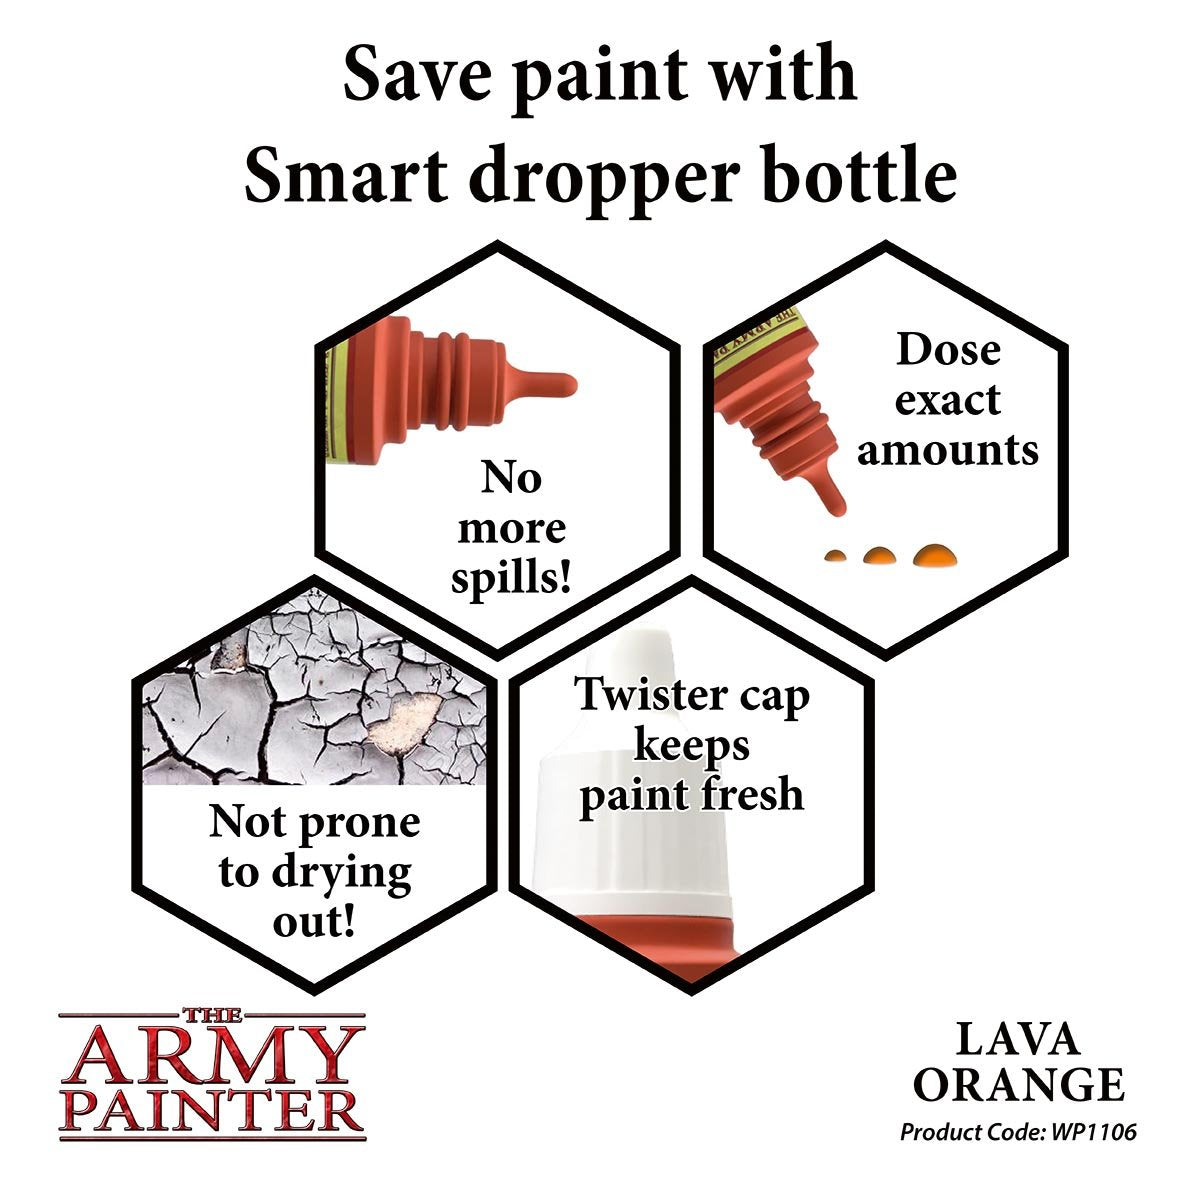 The Army Painter Warpaints WP1106 Lava Orange Acrylic Paint 18ml bottle